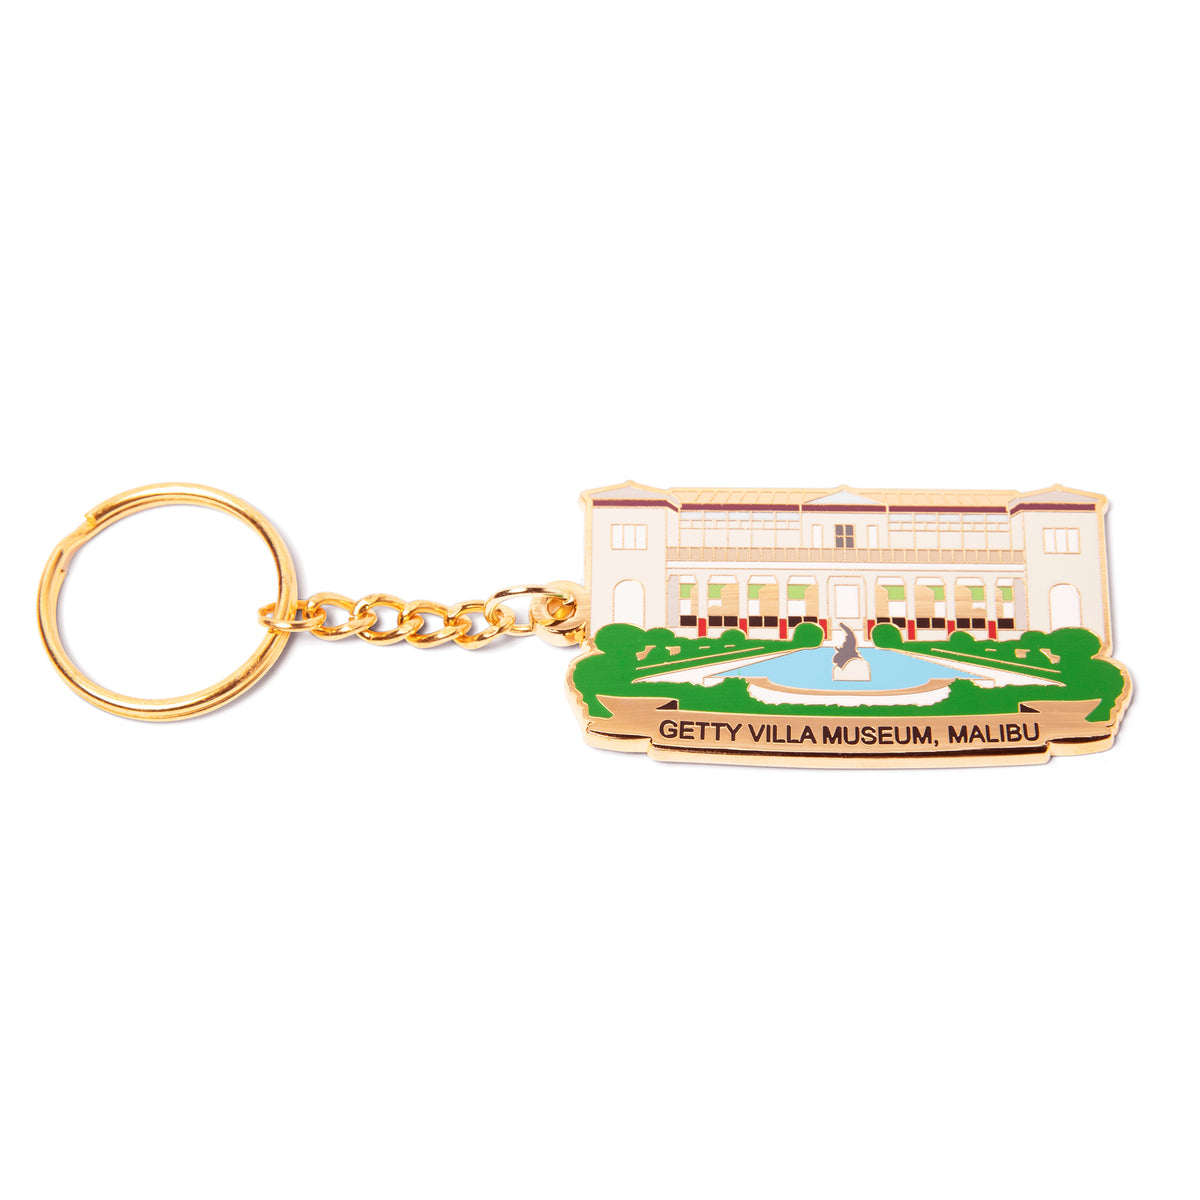 Getty Villa Museum Key Chain